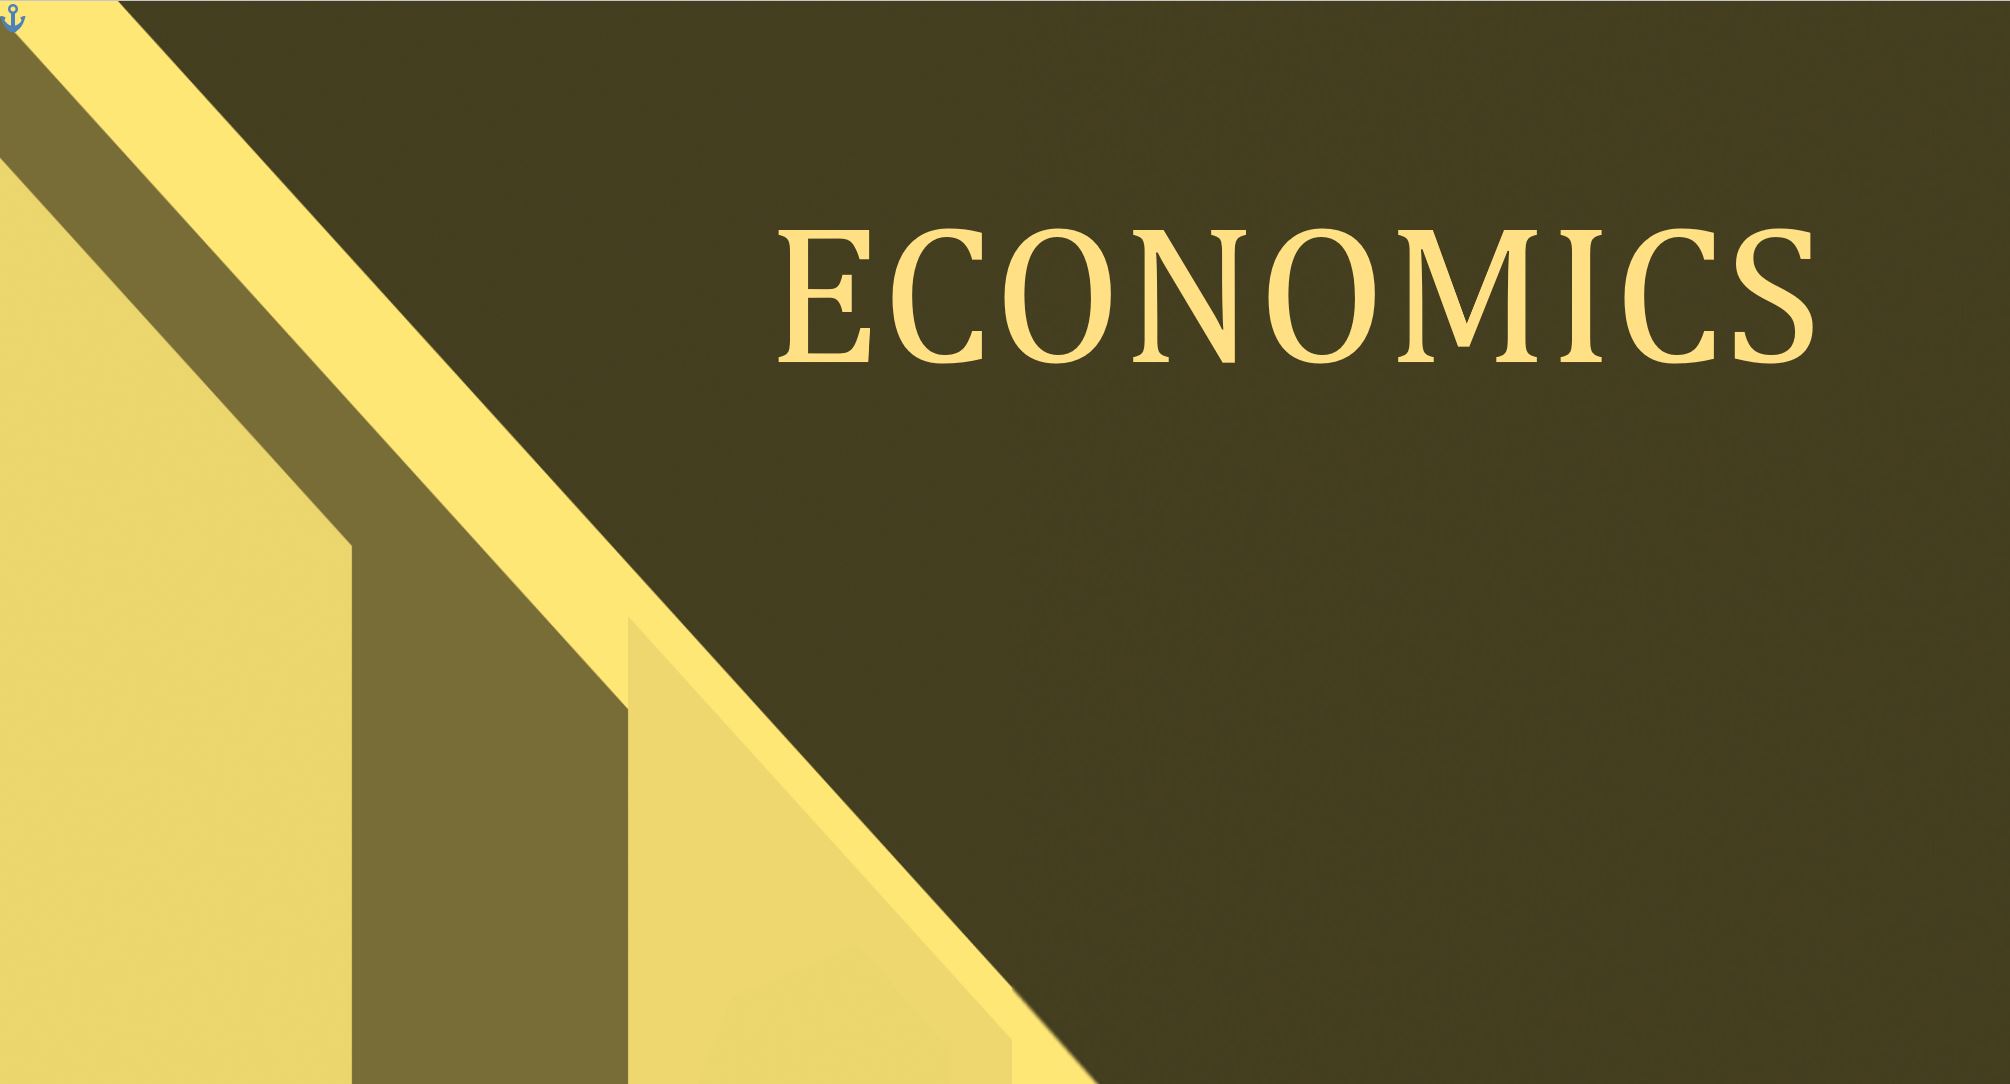 A6: Economics